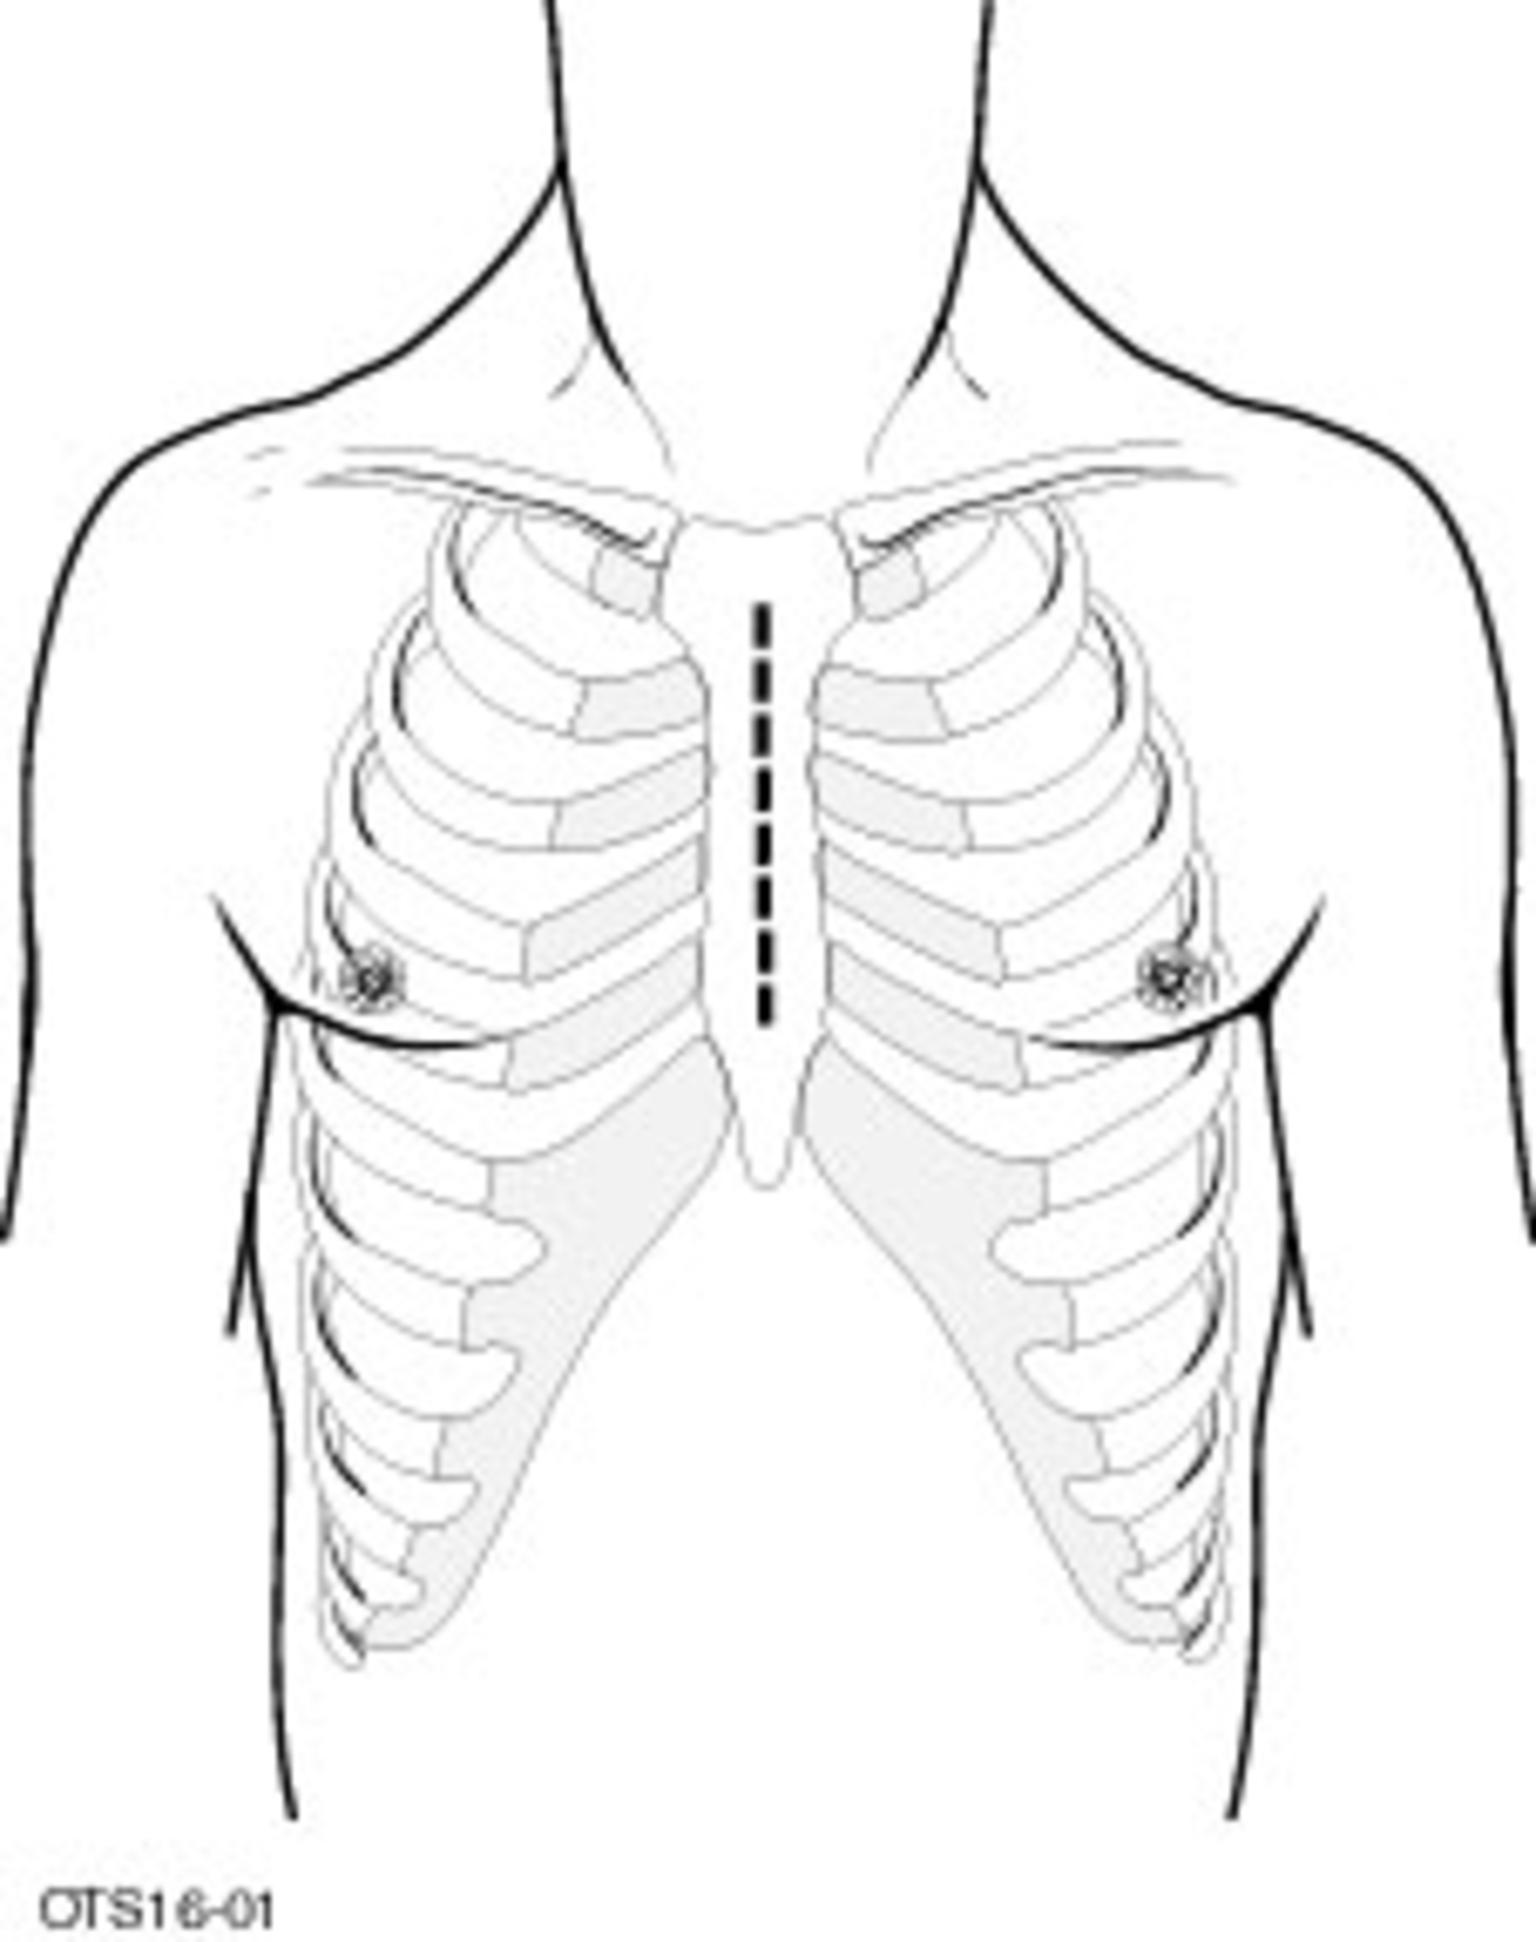 前纵隔肿瘤所在的位置:胸骨后两侧胸膜腔的中间间隔部分.